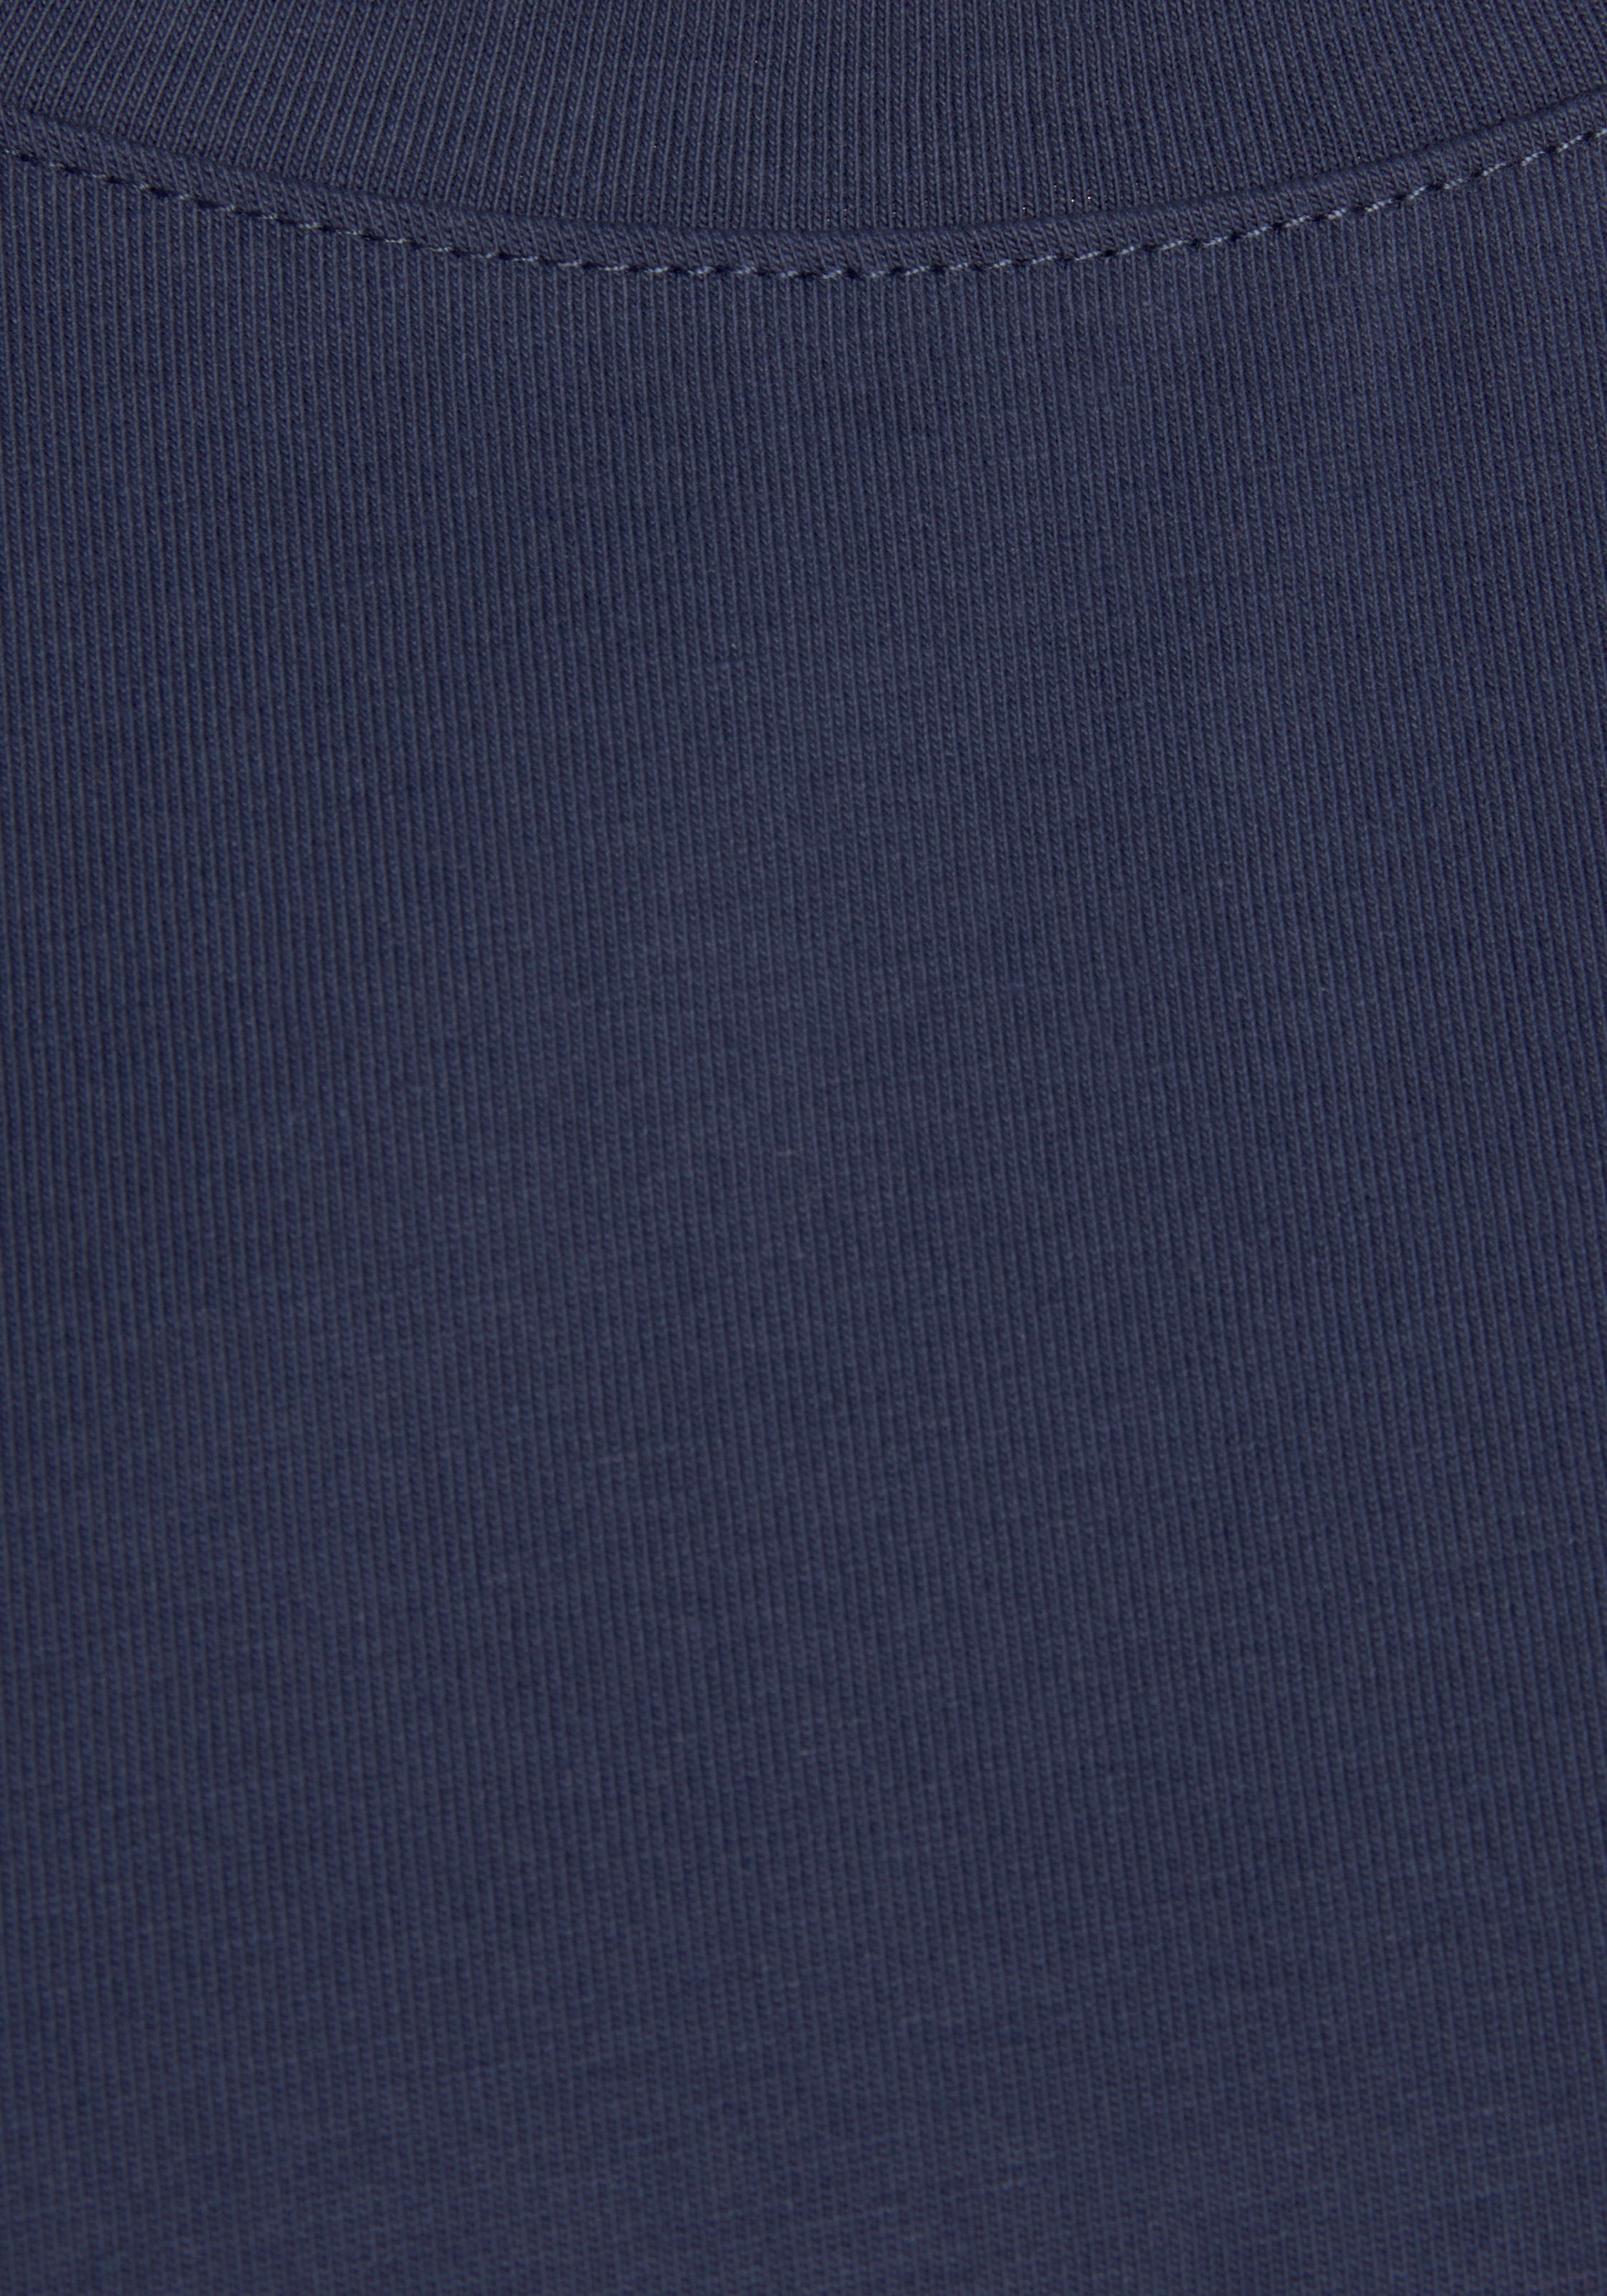 H.I.S T-Shirt navy im mit maritimen Ärmelaufschlag Loungewear Stil